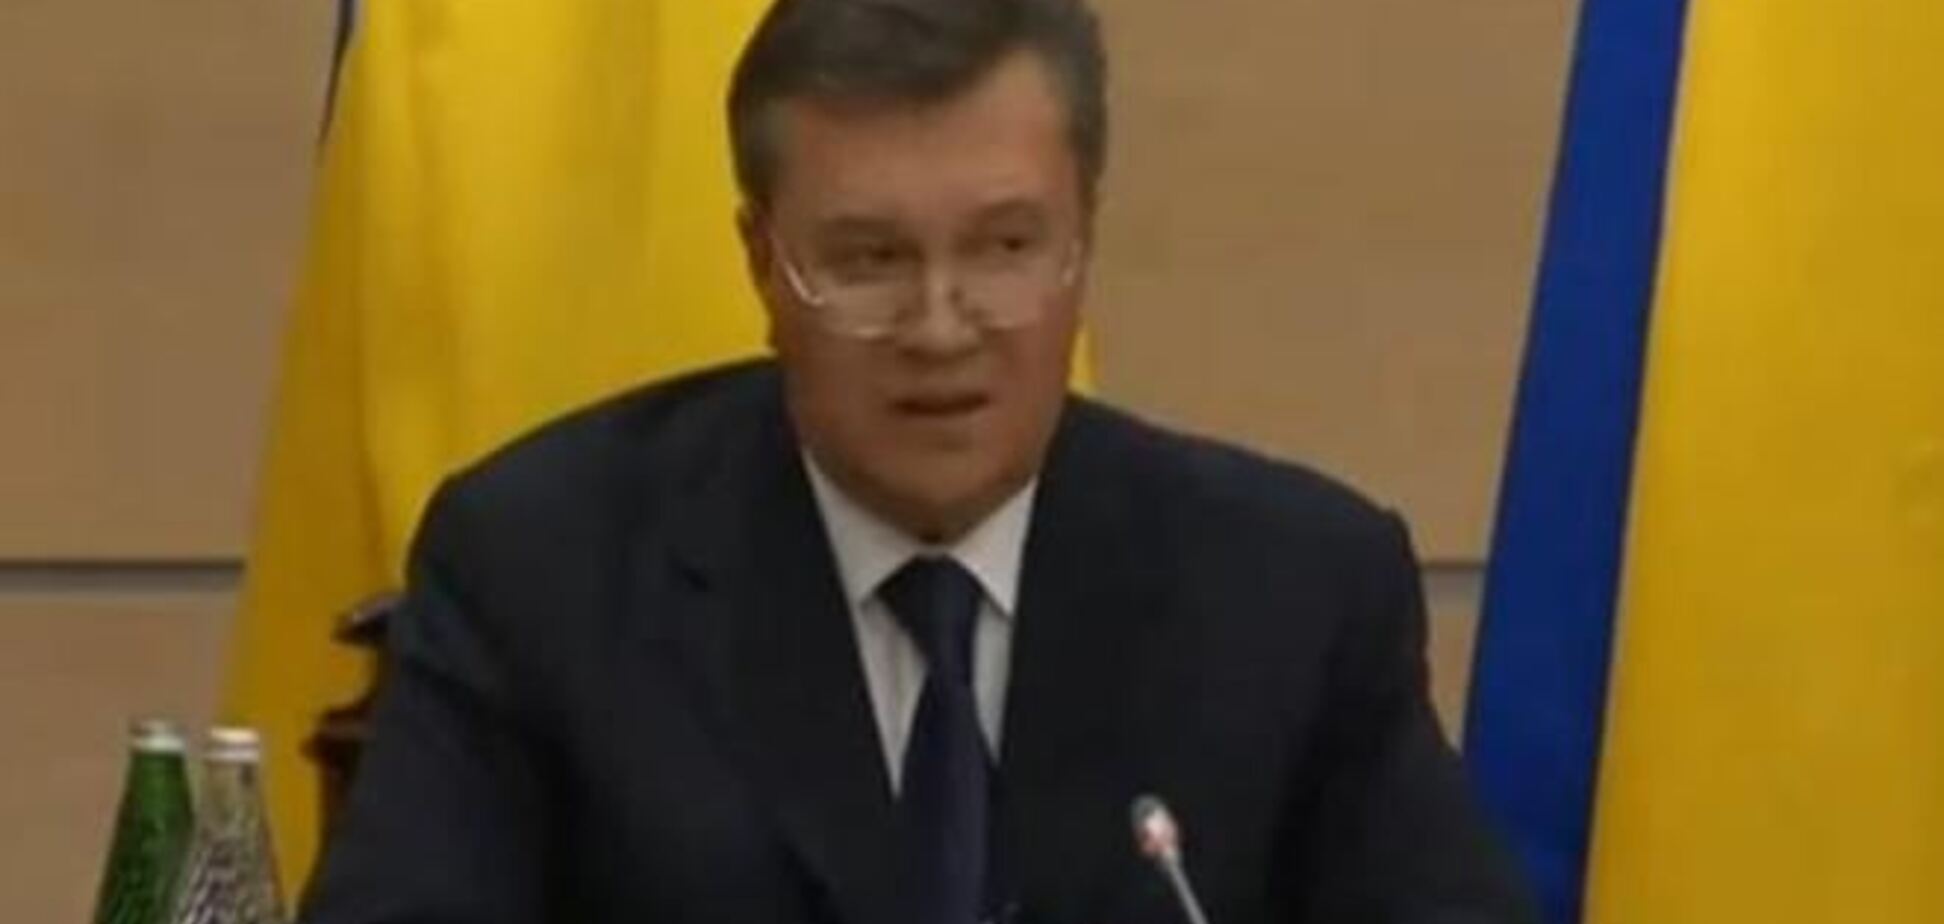 Янукович обижен на тех, кто его 'кинул' - эксперт